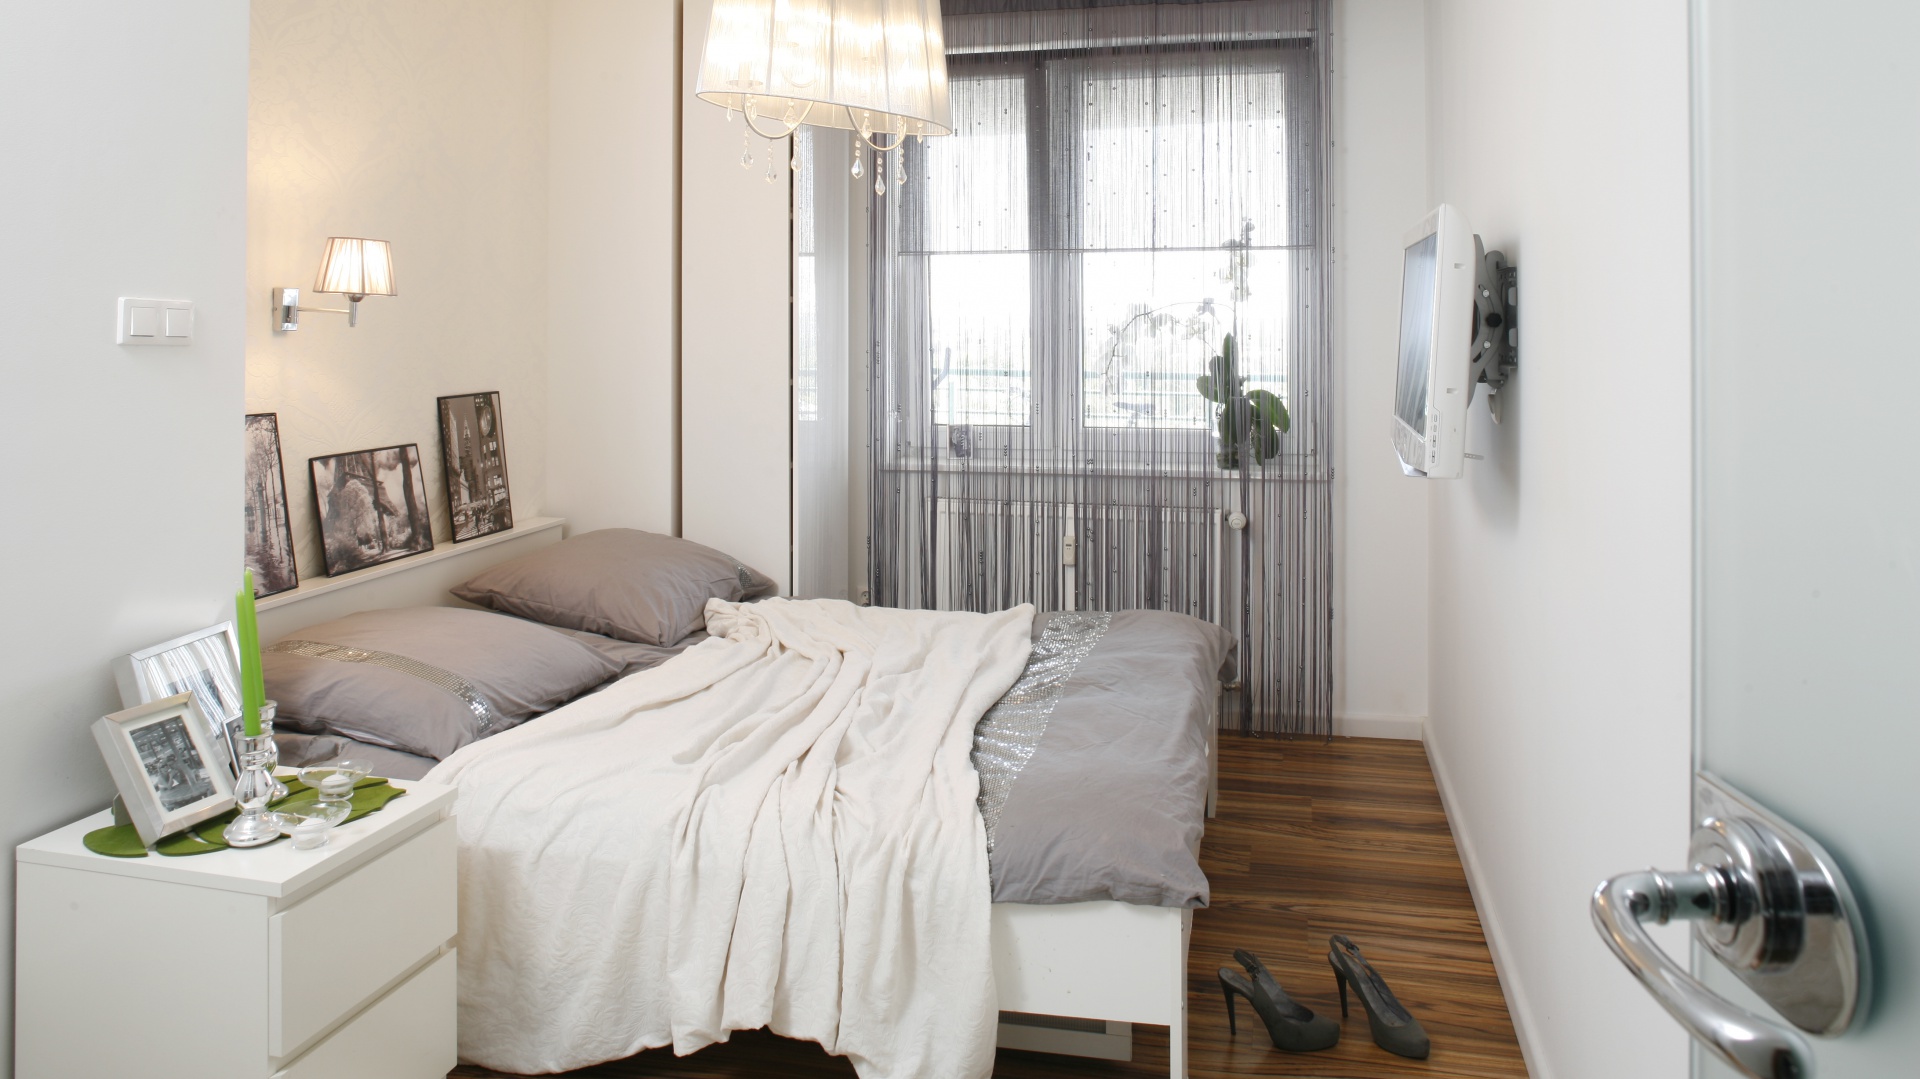 Mała sypialnia w bloku — jak wykorzystać przestrzeń? Inspiracje - Dom